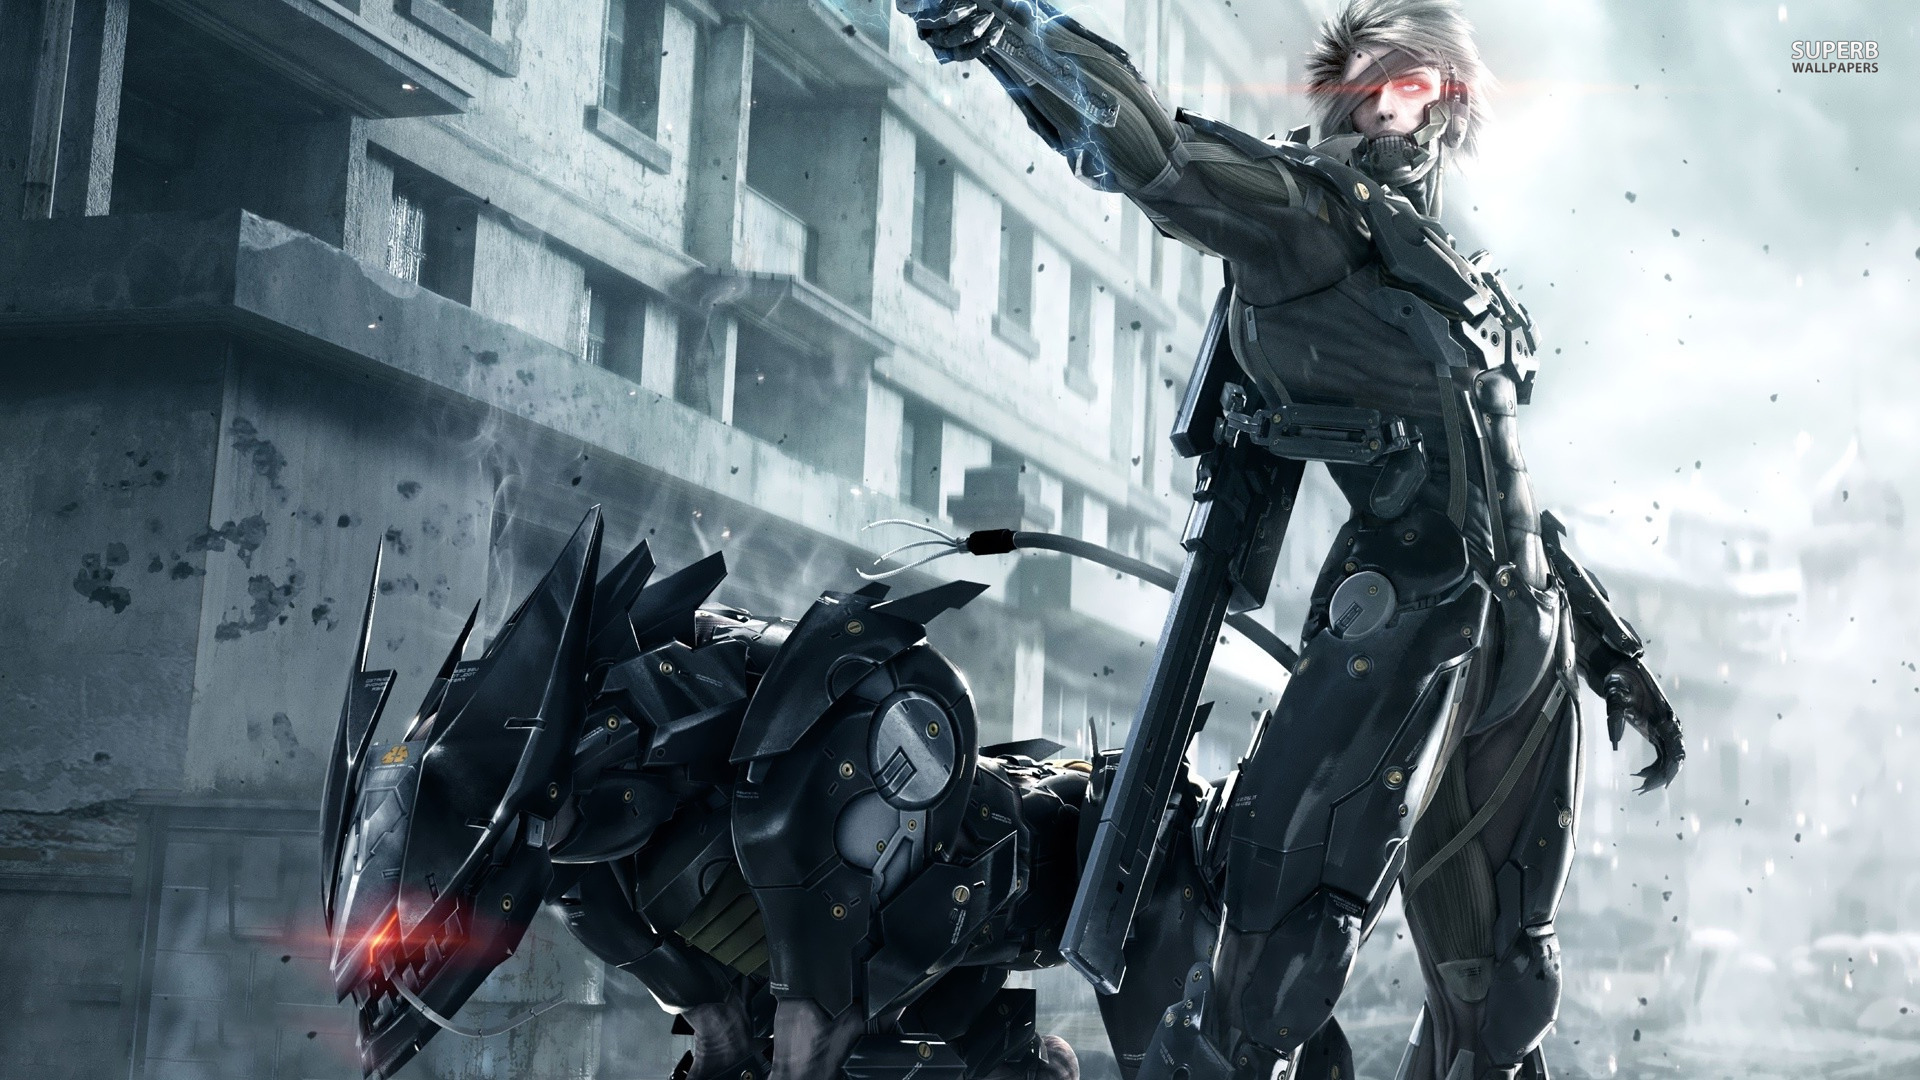 HQ Metal Gear Rising Wallpapers | File 575.27Kb